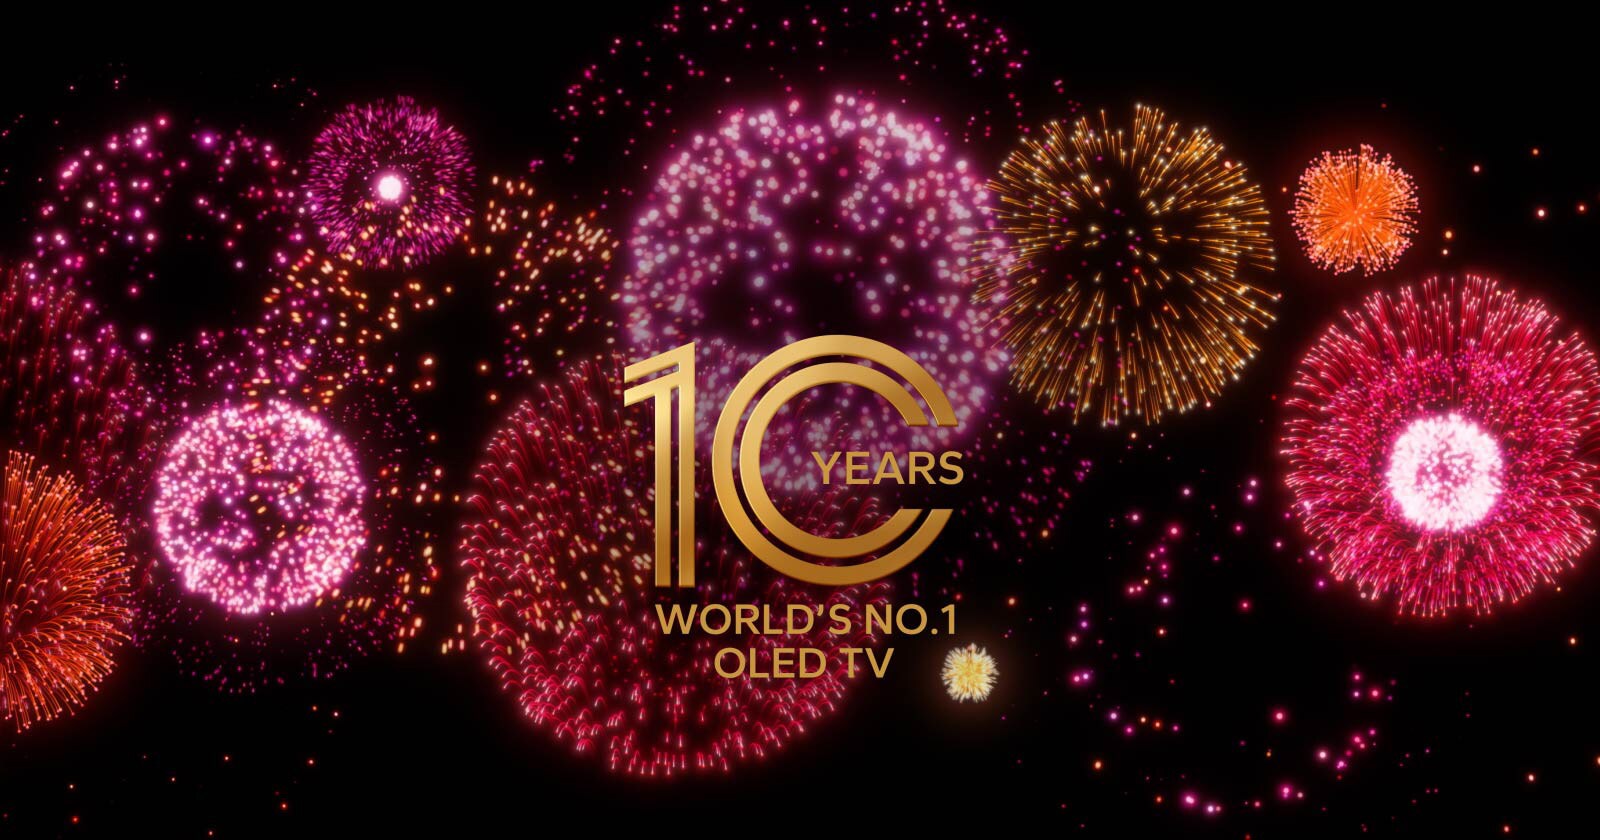 影片顯示 10 年全球第一的 OLED 電視之徽章標誌，逐漸出現在帶有紫色和粉色煙火的黑色背景上。